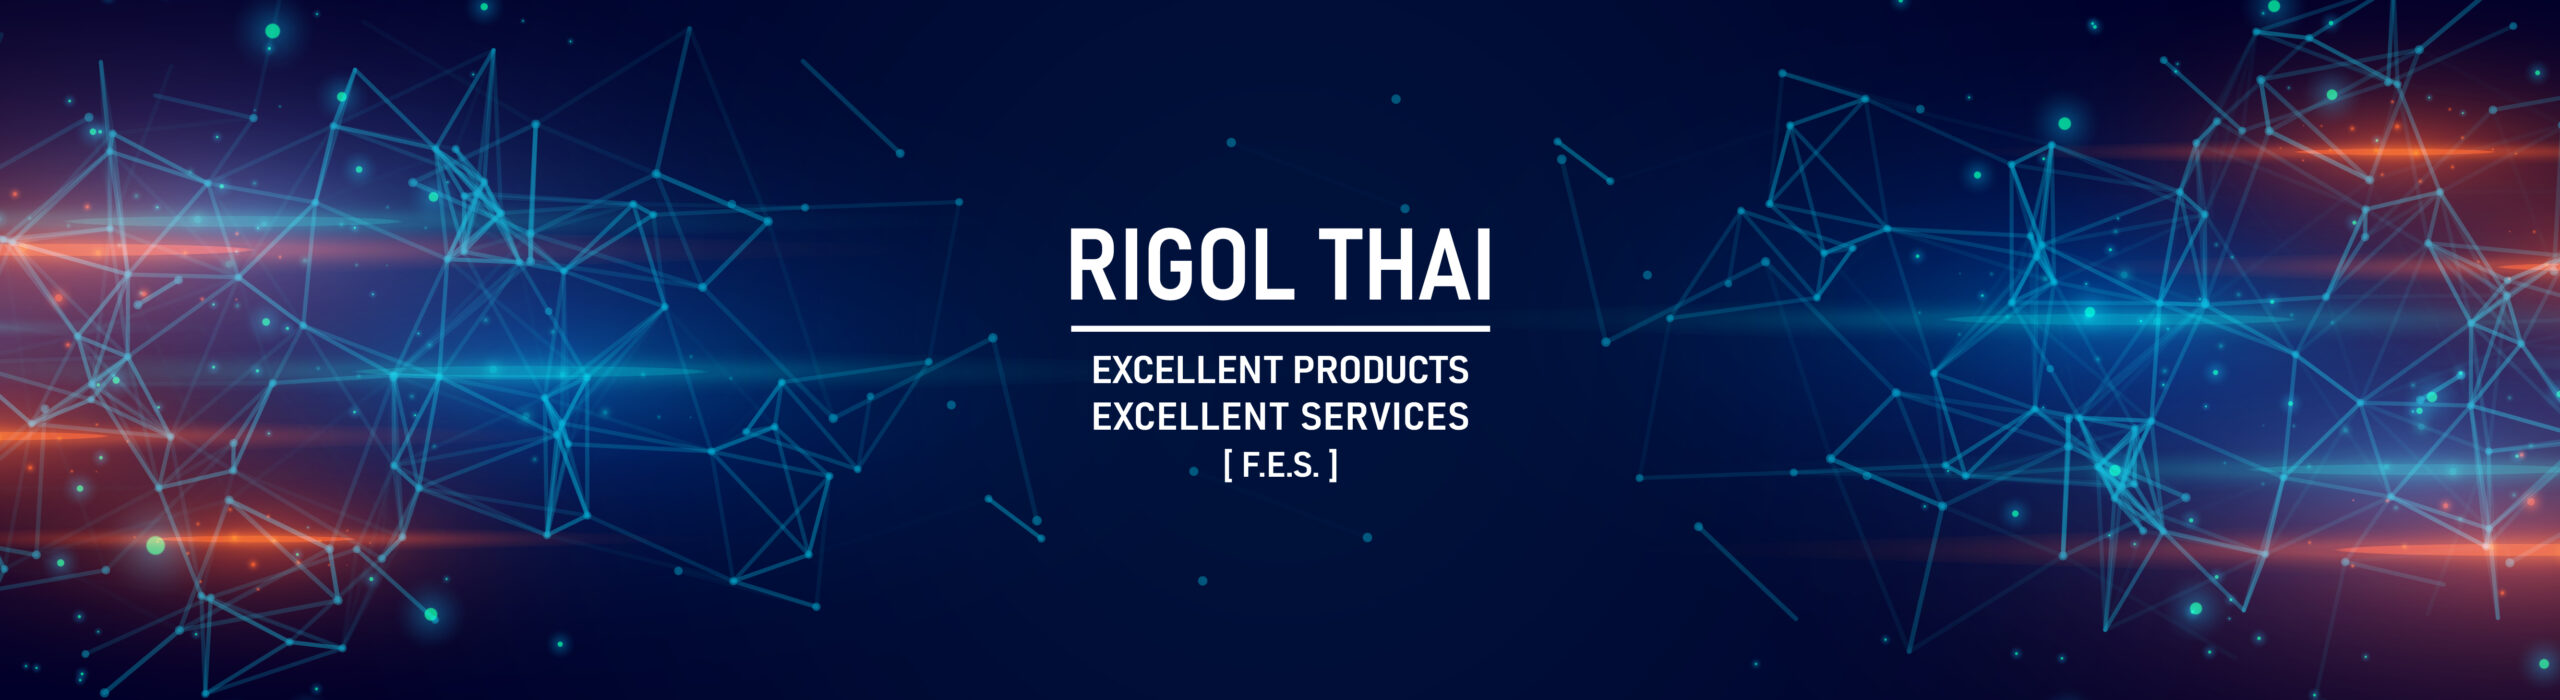 Rigol Thai